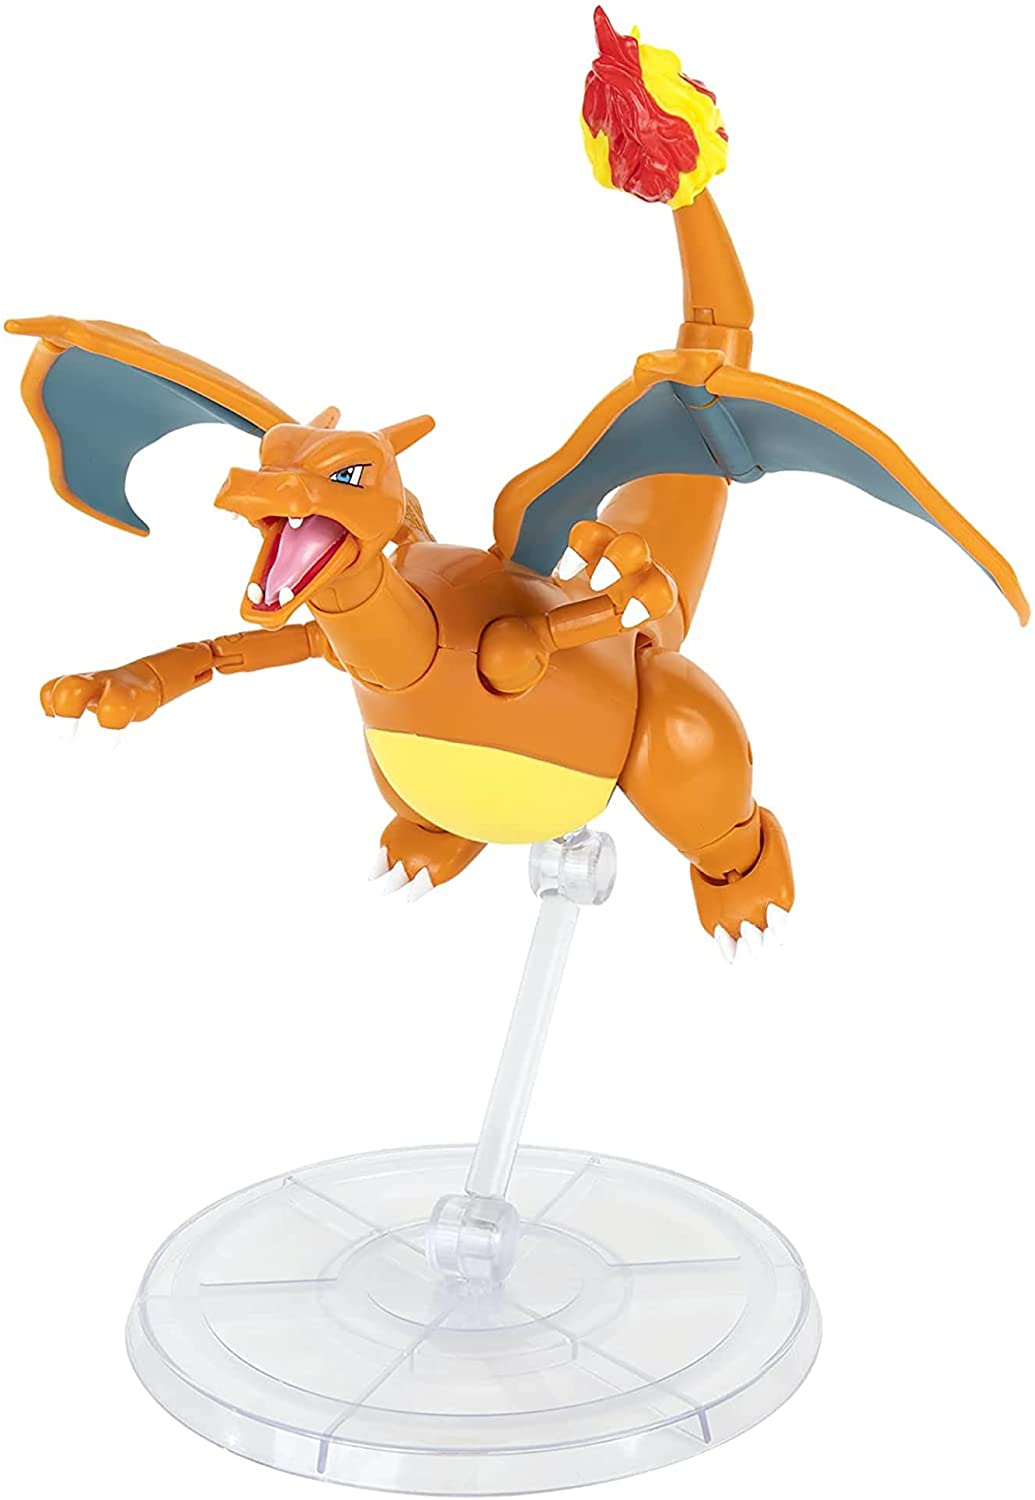 Pokémon - Figurine Articulée Dracaufeu 15cm